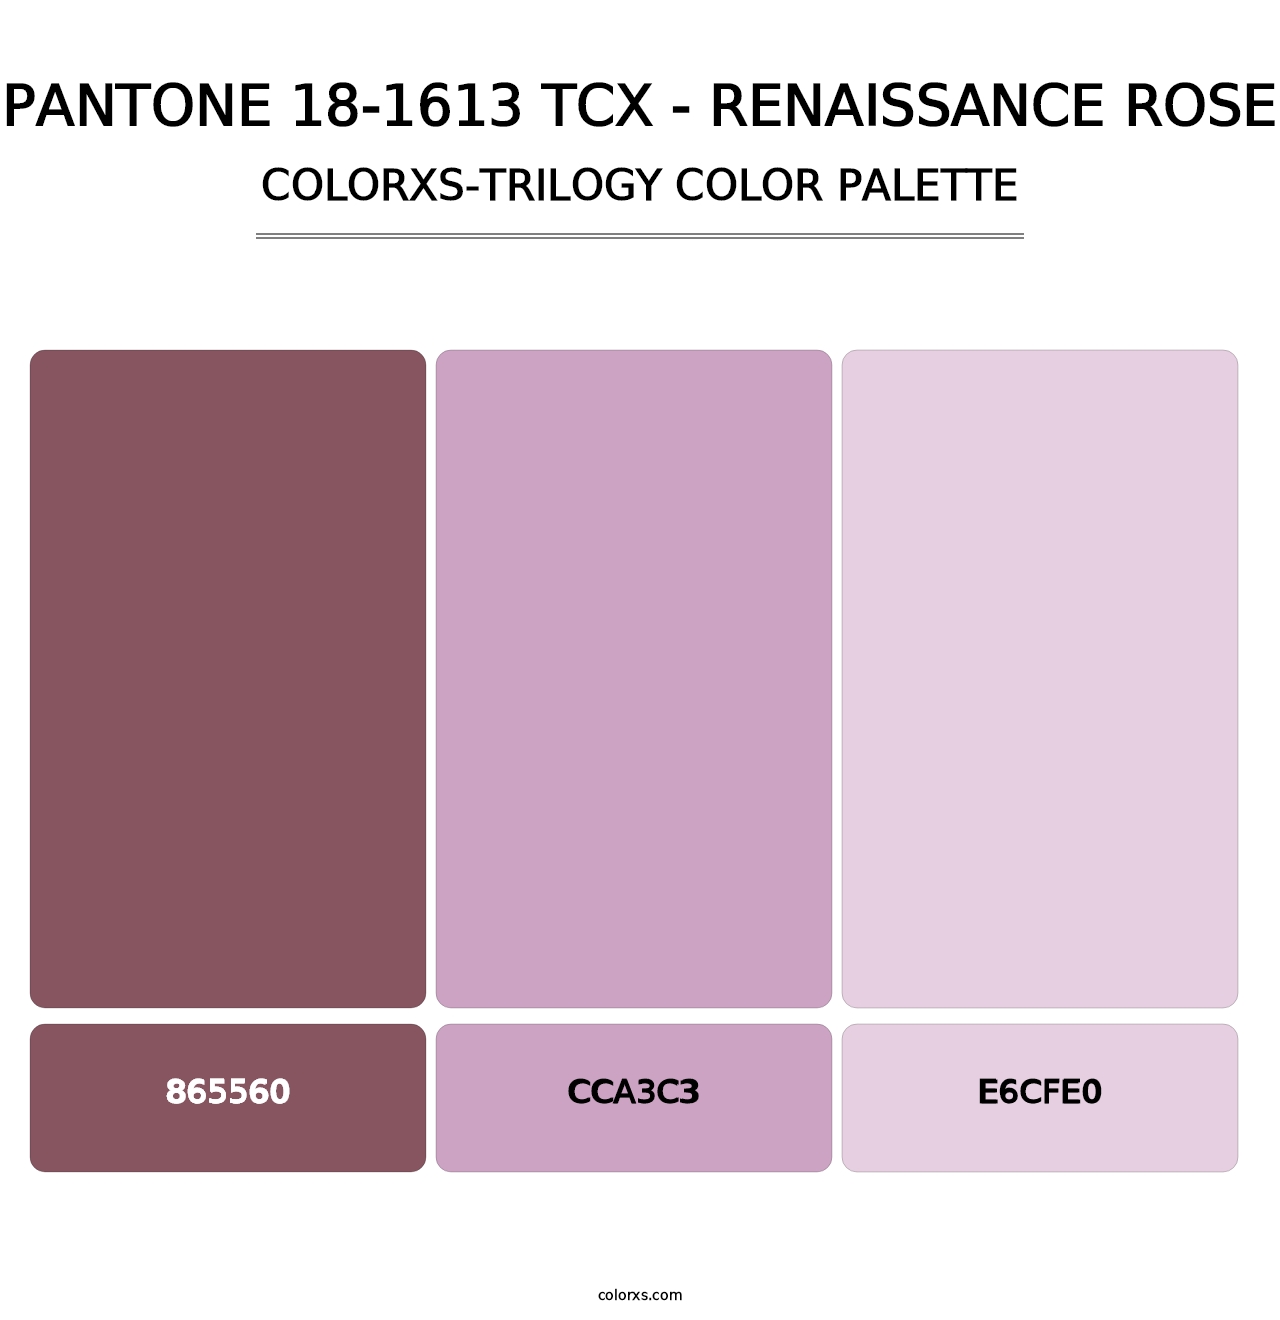 PANTONE 18-1613 TCX - Renaissance Rose - Colorxs Trilogy Palette